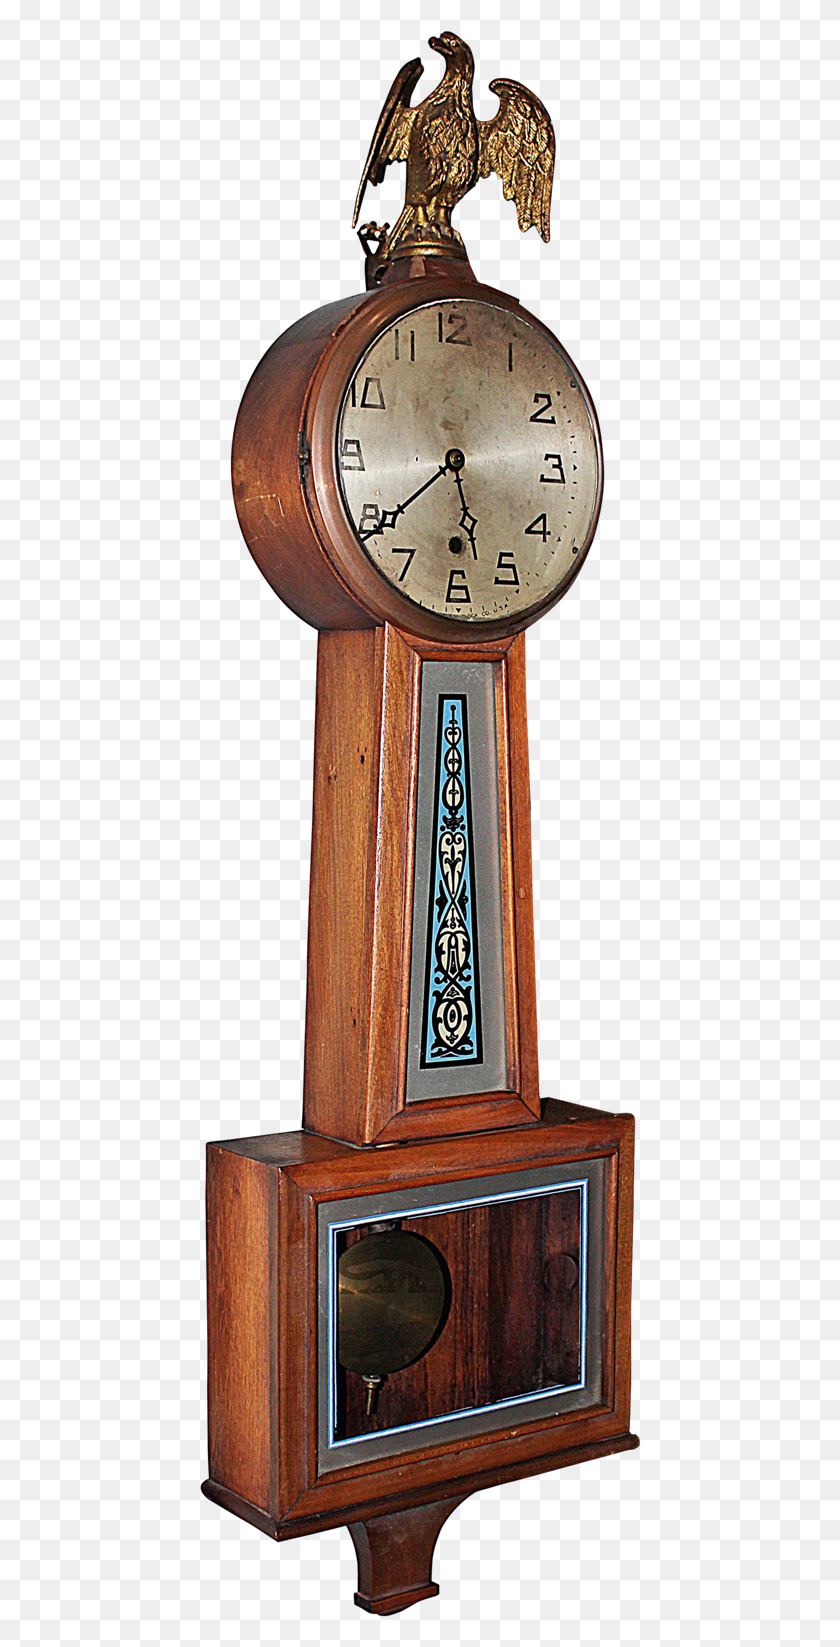 442x1587 Часы Банджо На Прозрачном Фоне Кварцевые Часы, Башня С Часами, Башня, Архитектура Png Скачать